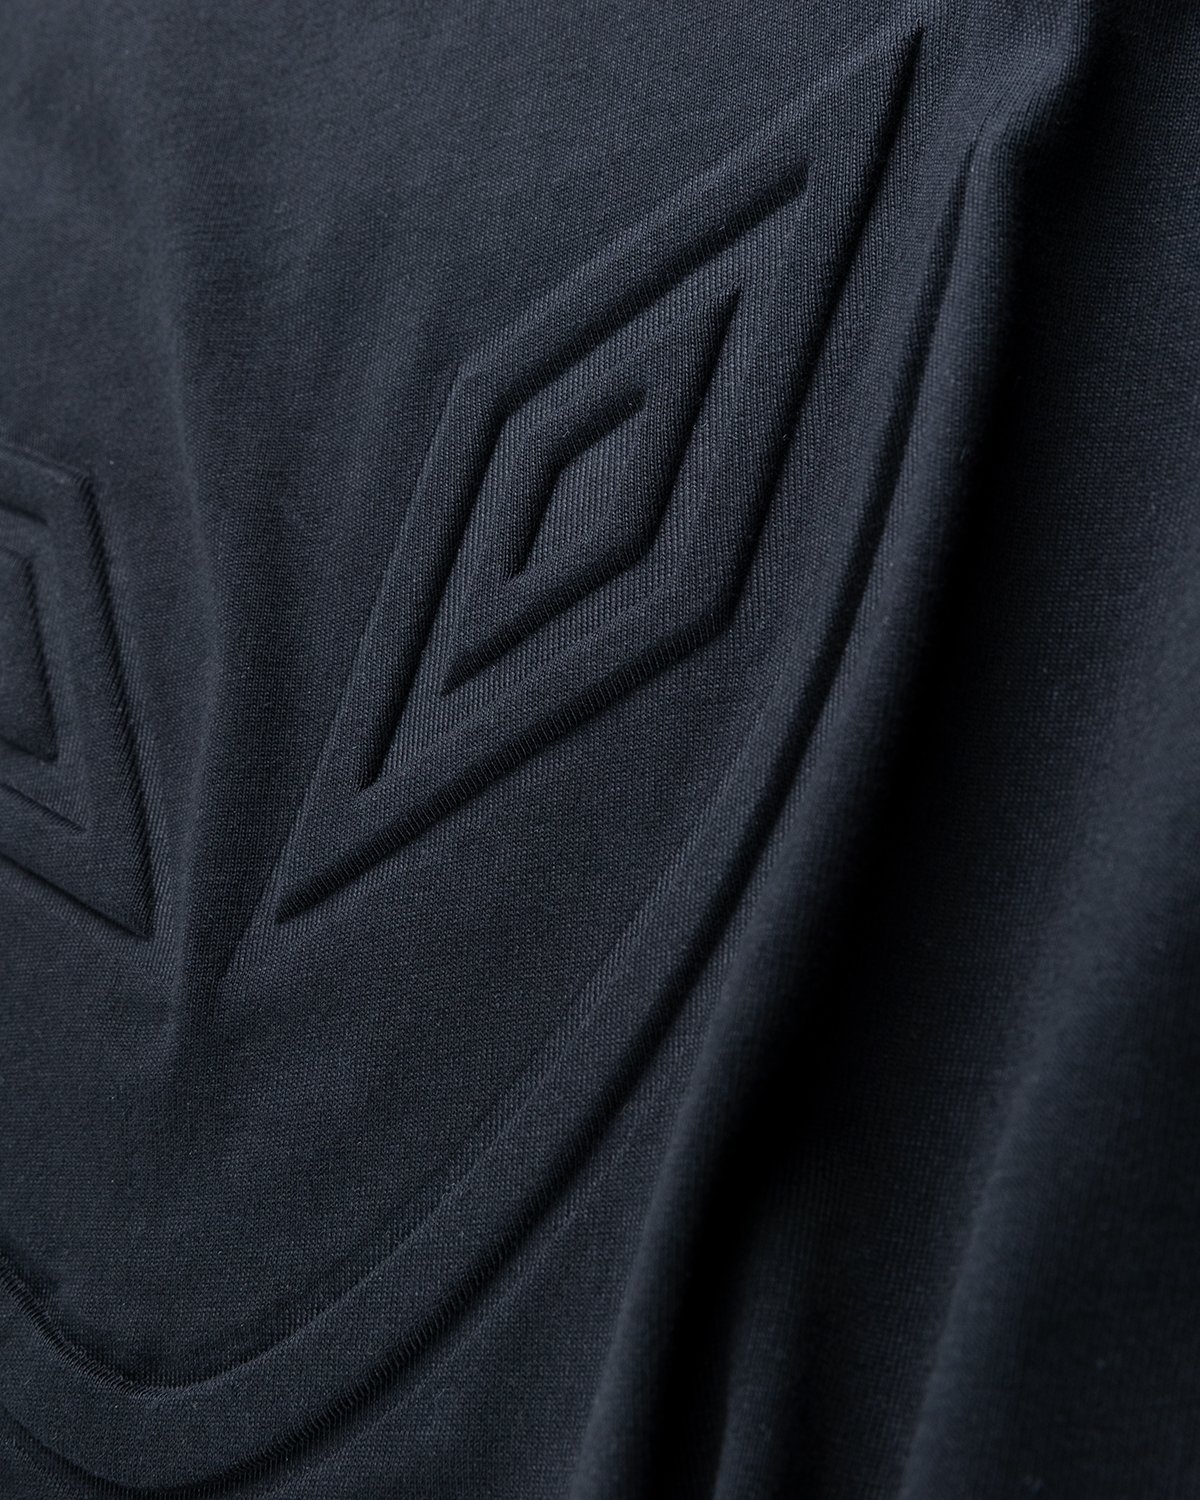 Umbro x Sucux - Oversize T-Shirt Black - Clothing - Black - Image 3